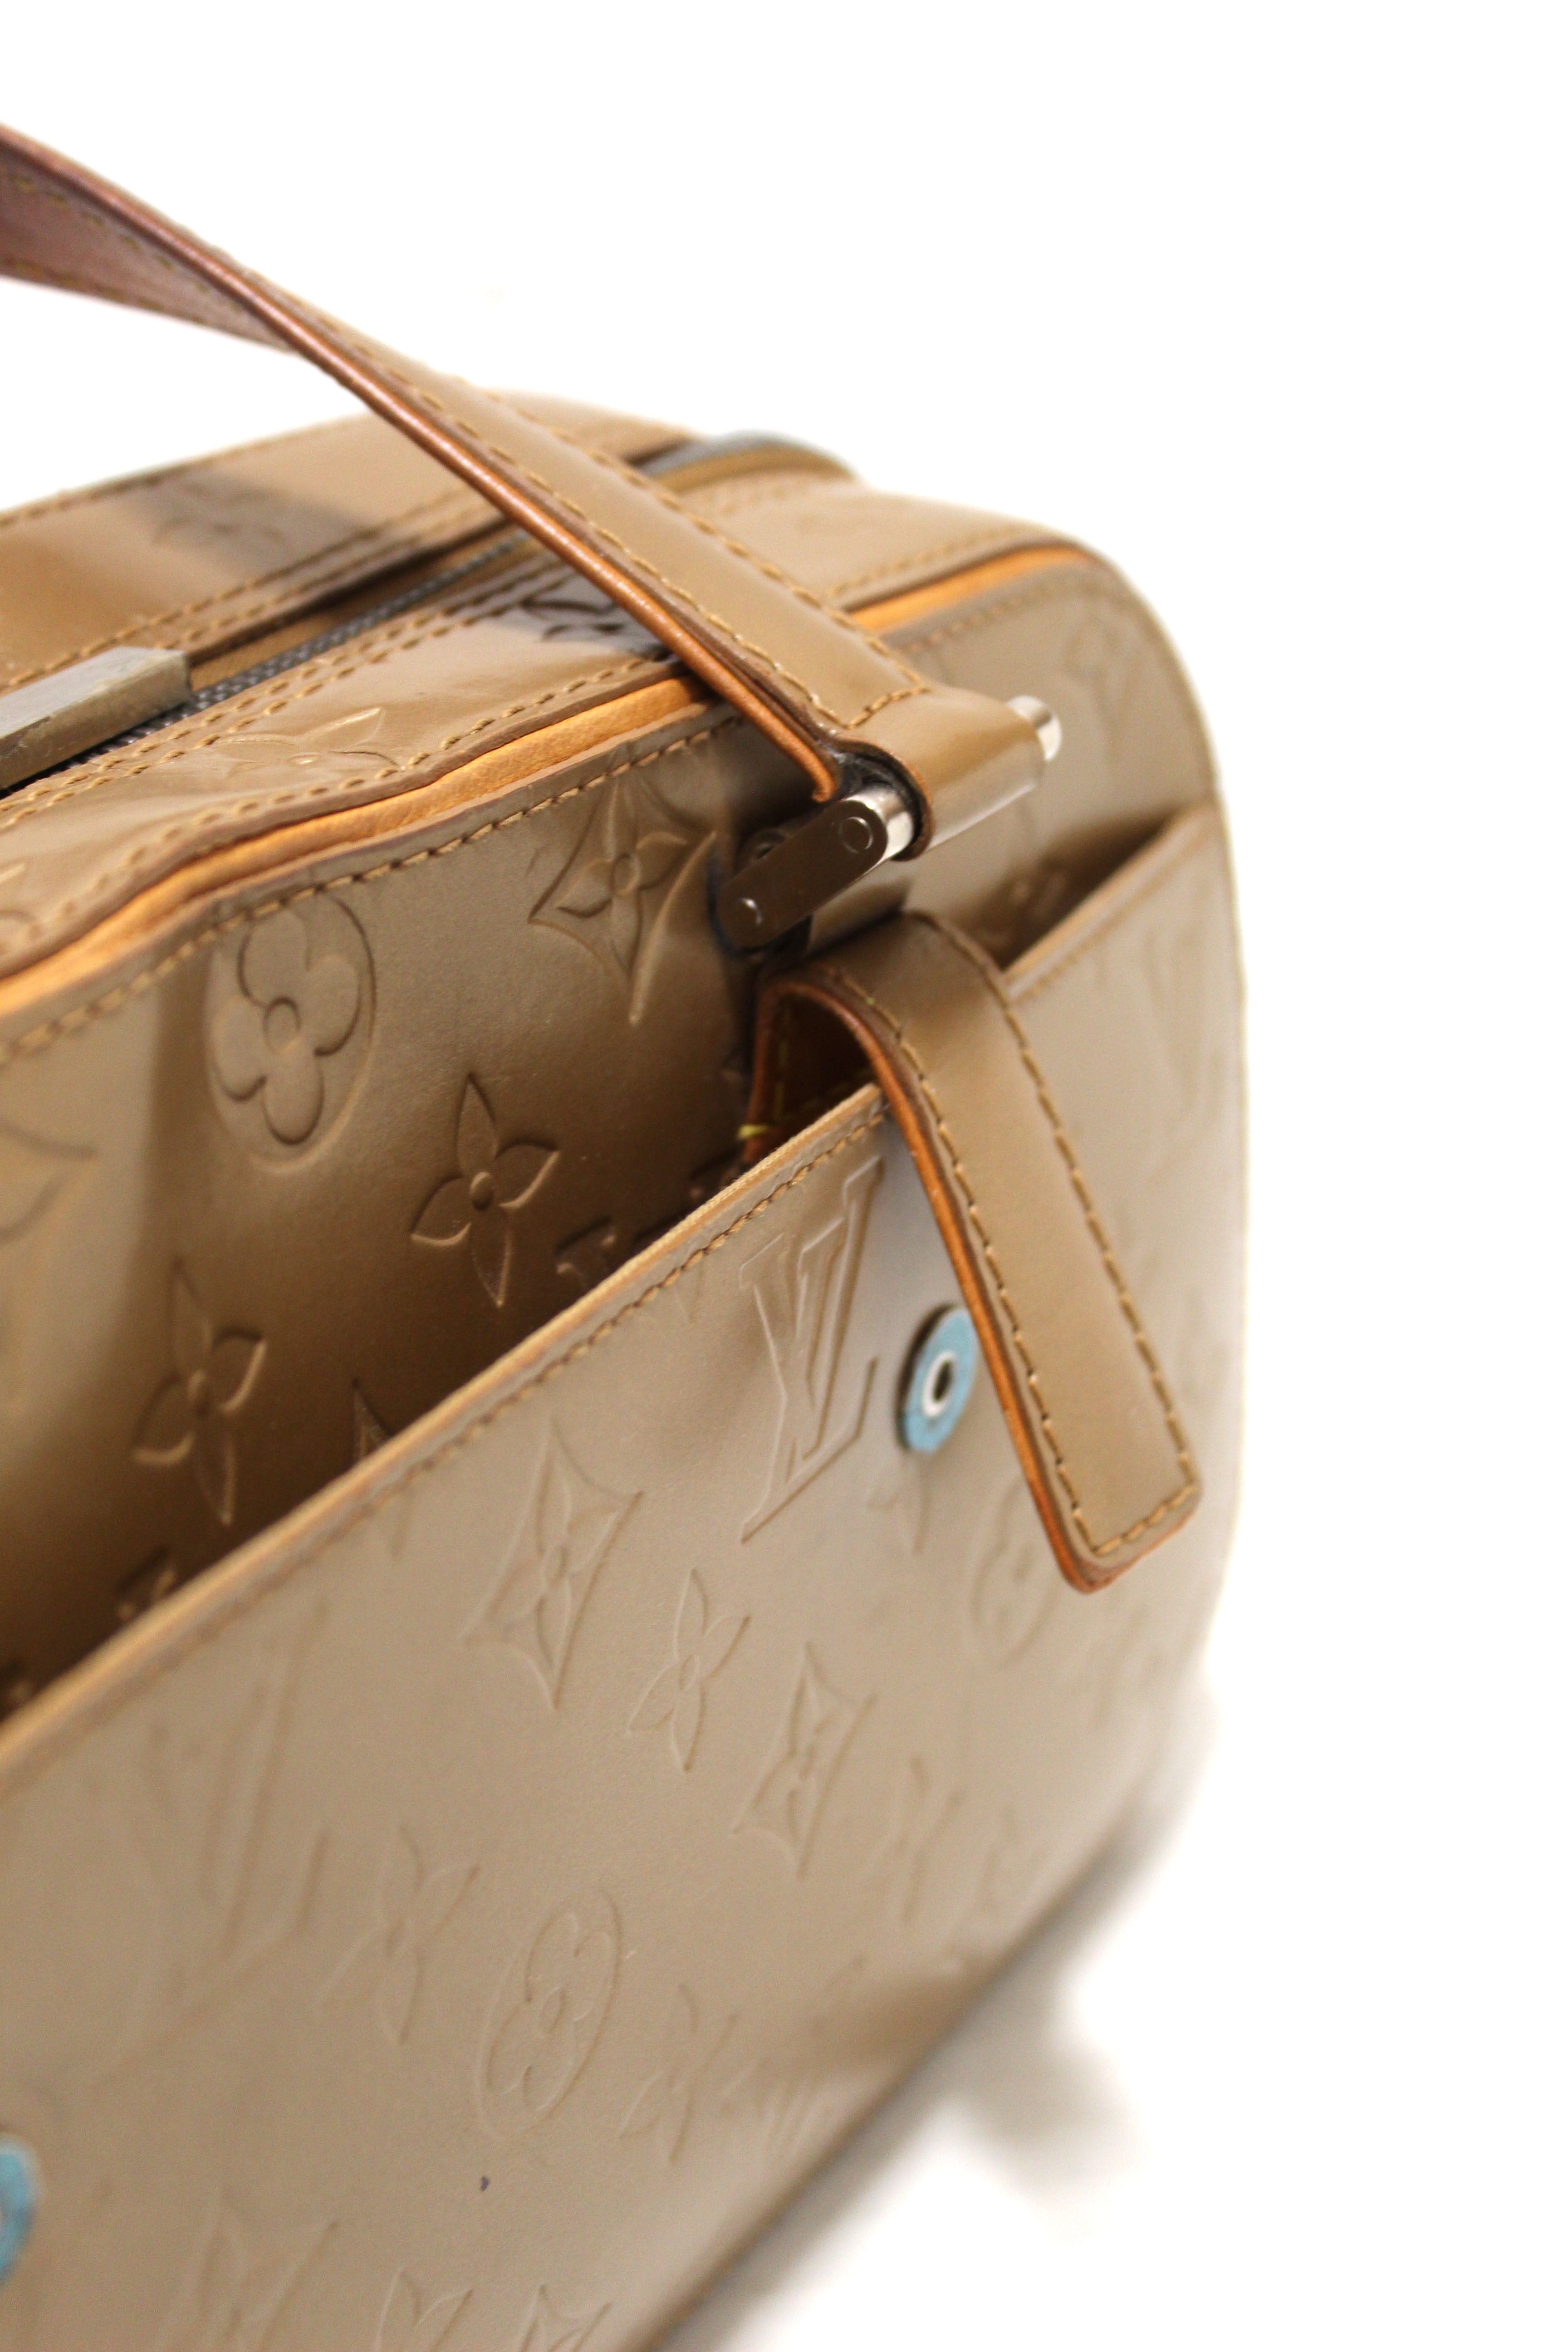 Authentic Louis Vuitton Gold Matte Monogram Vernis Shelton Handbag